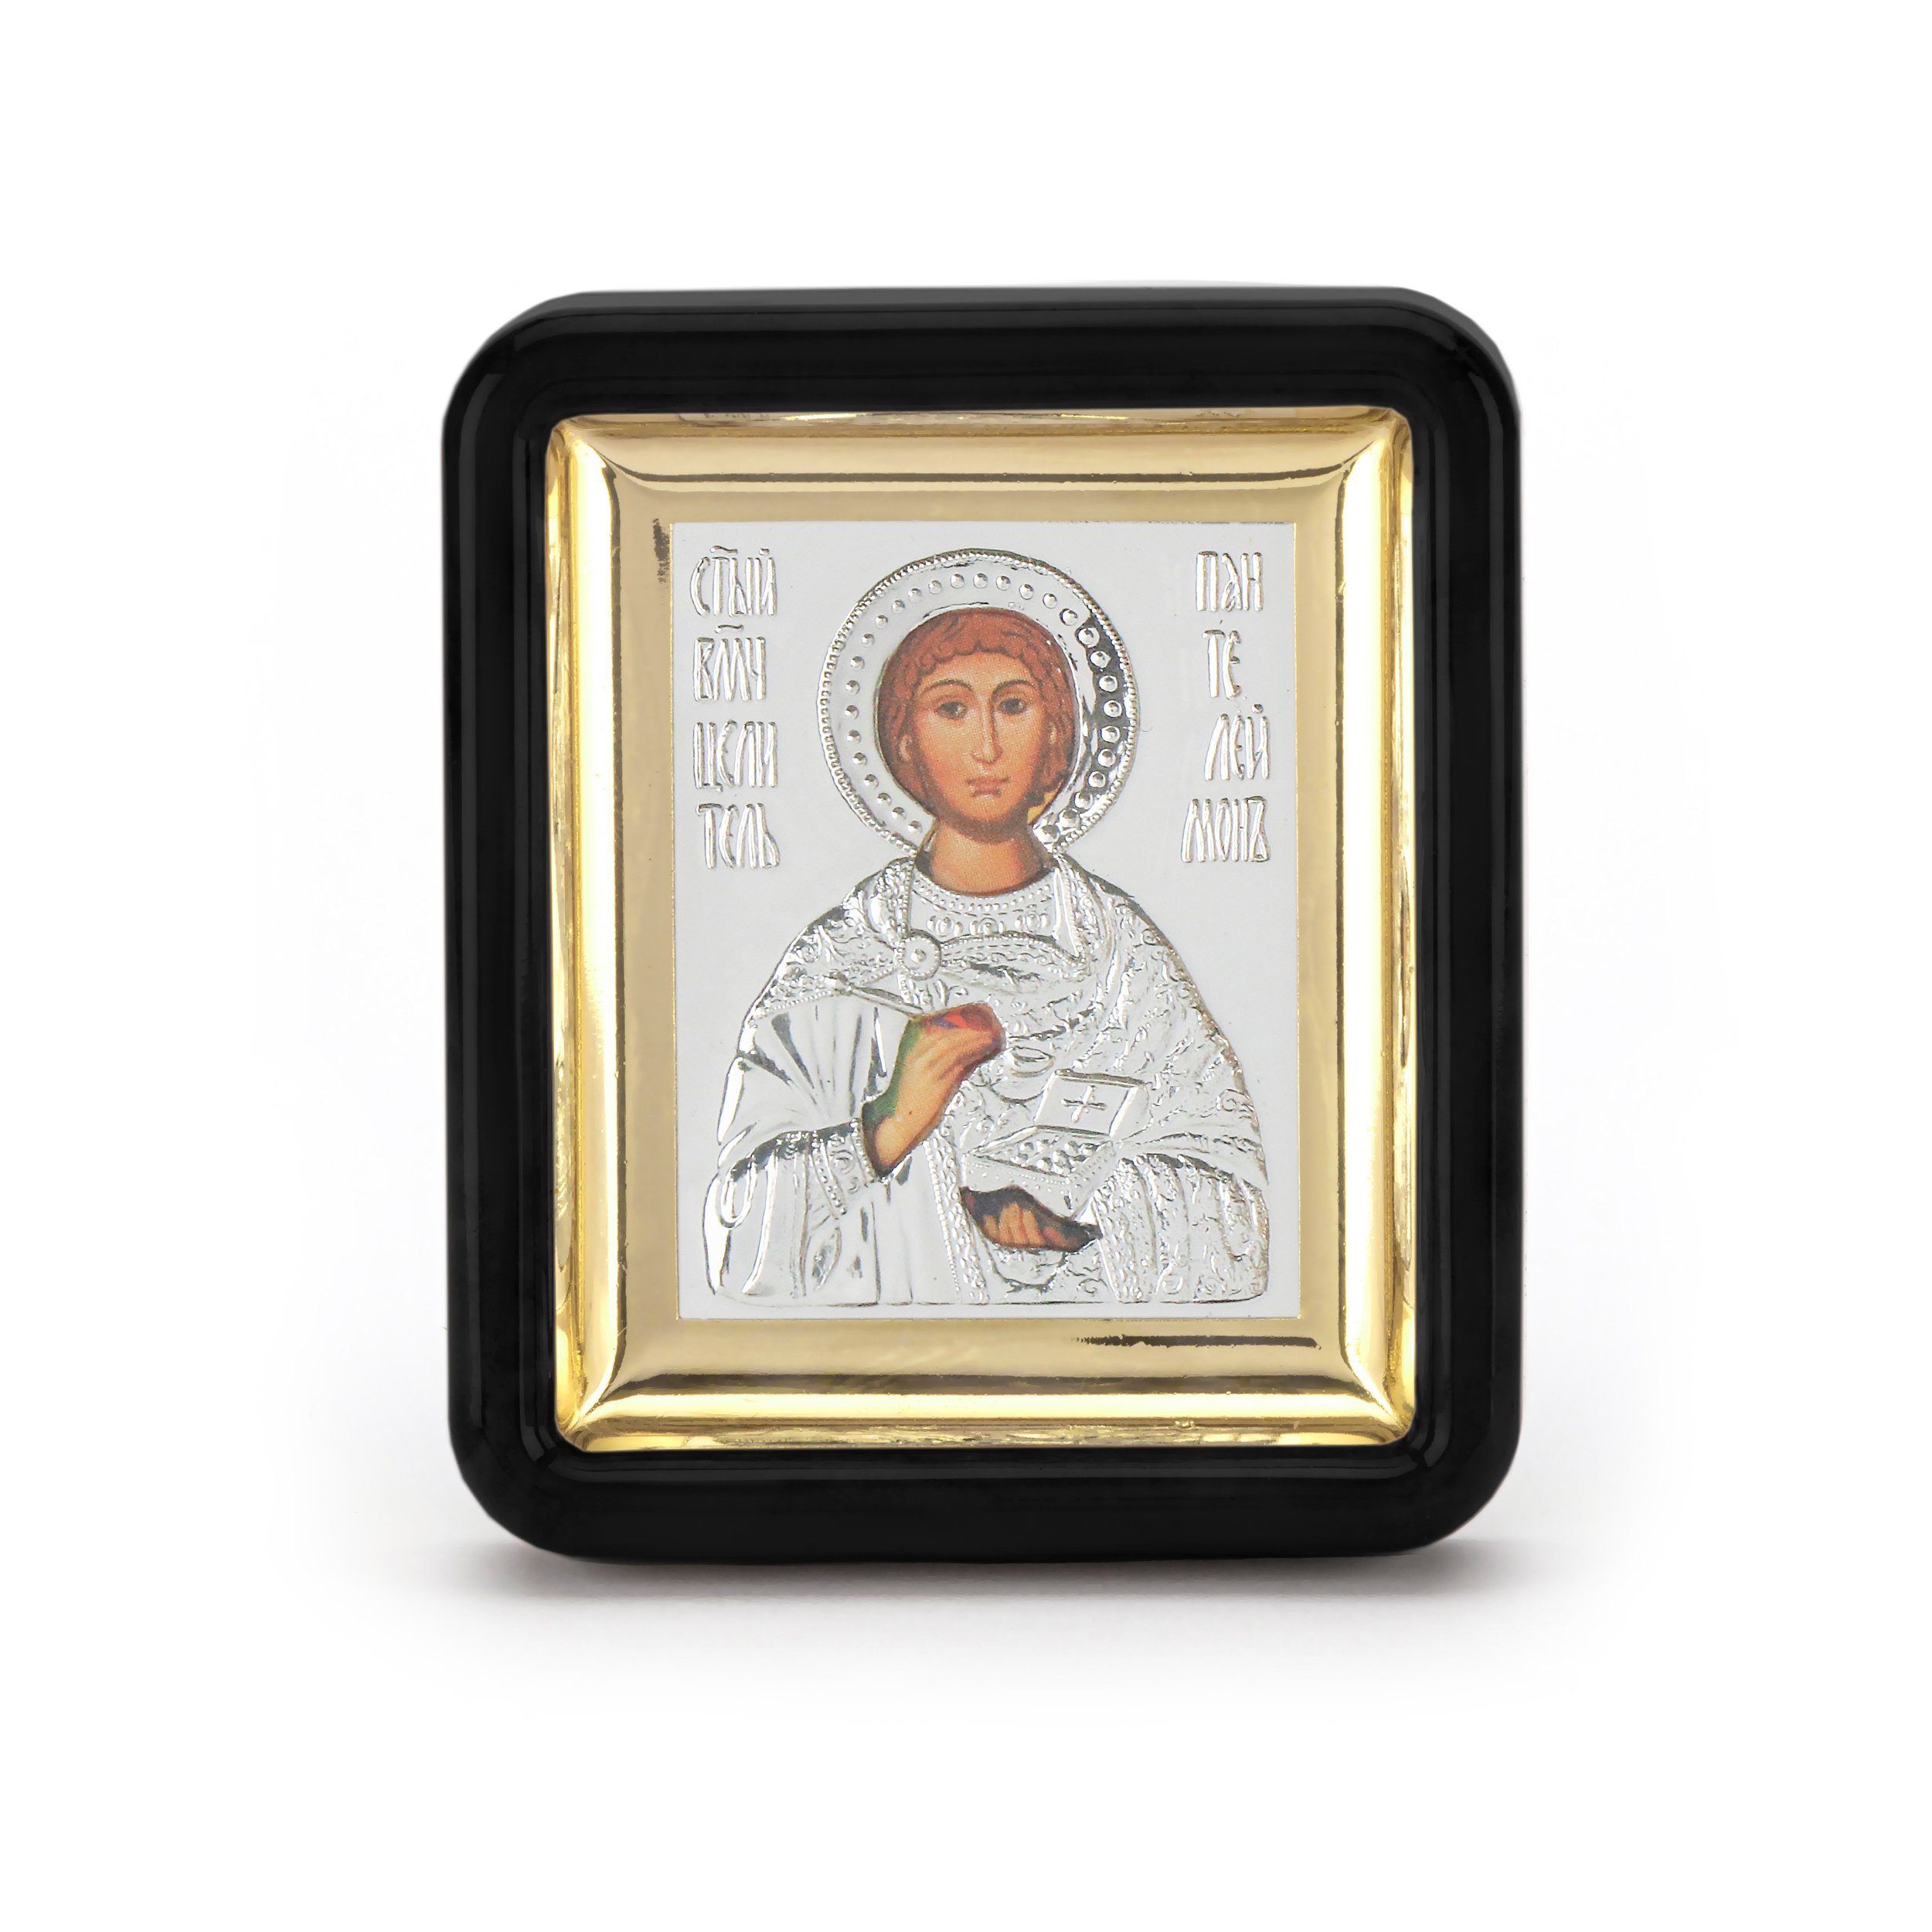 NKlaus Holzbild Heiliger Pantaleon Ikone in schwarzen Rahmen mit G